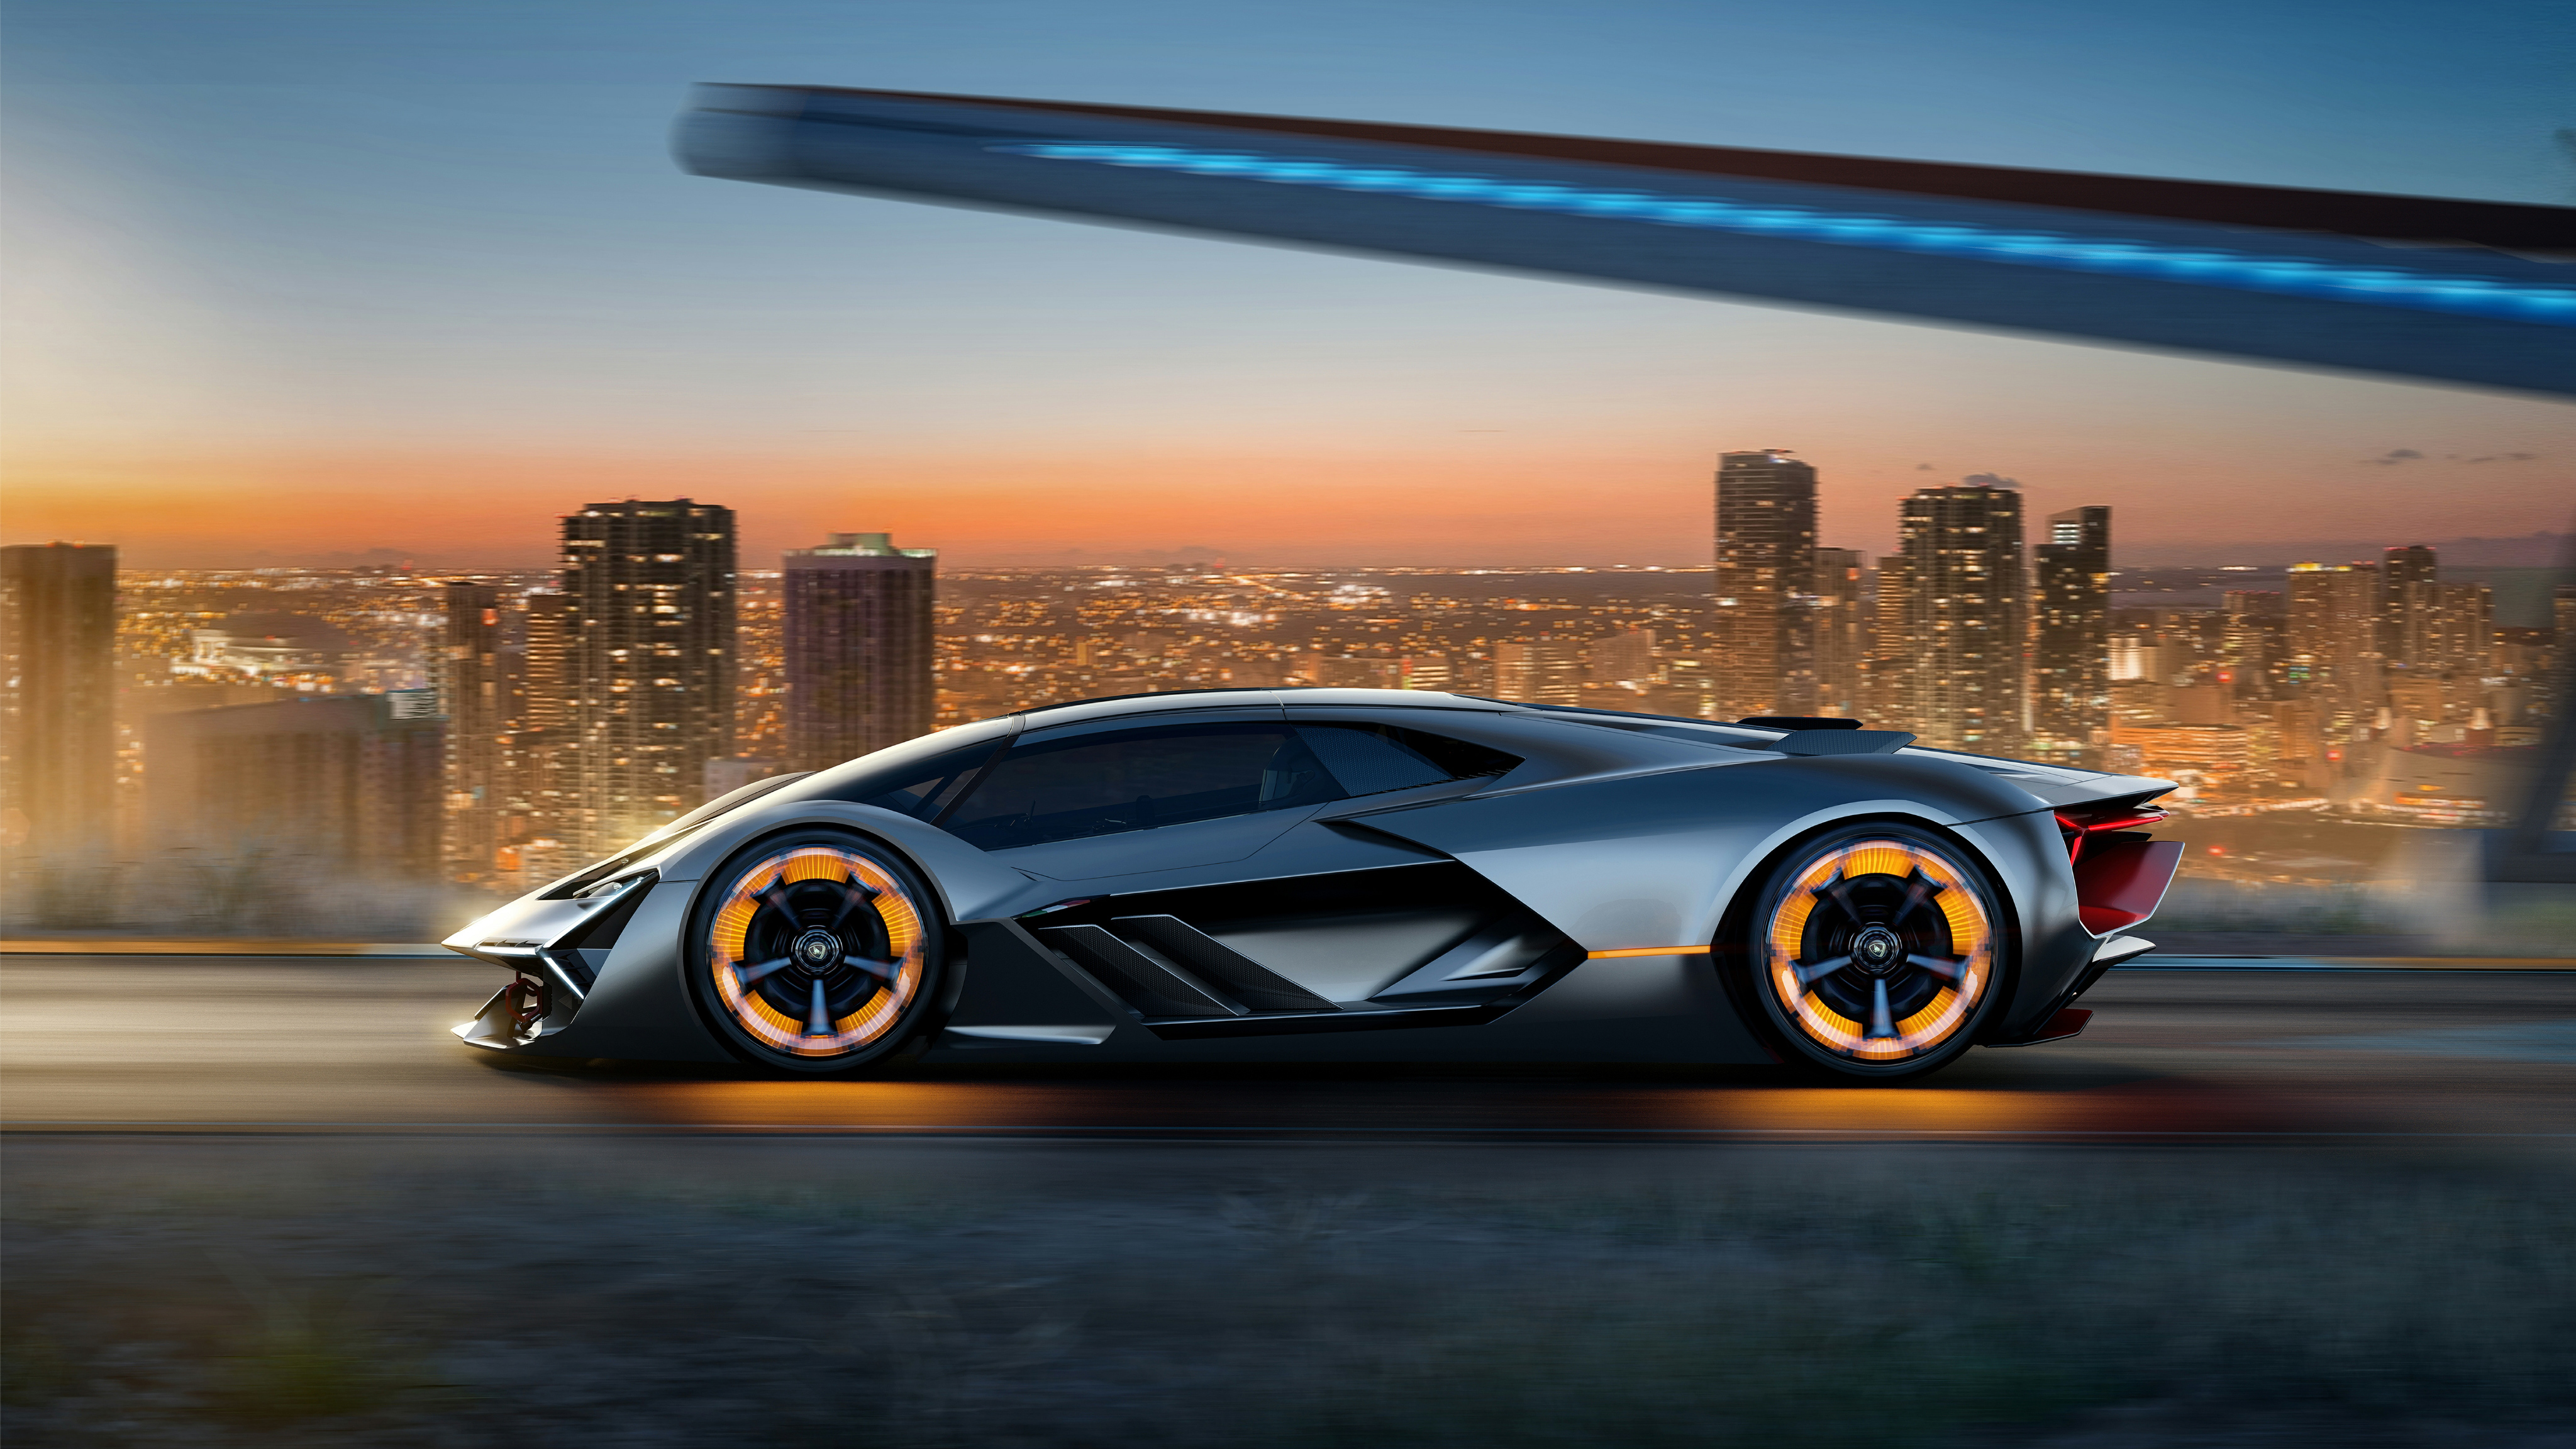 Lamborghini Terzo Millennio , HD Wallpaper & Backgrounds